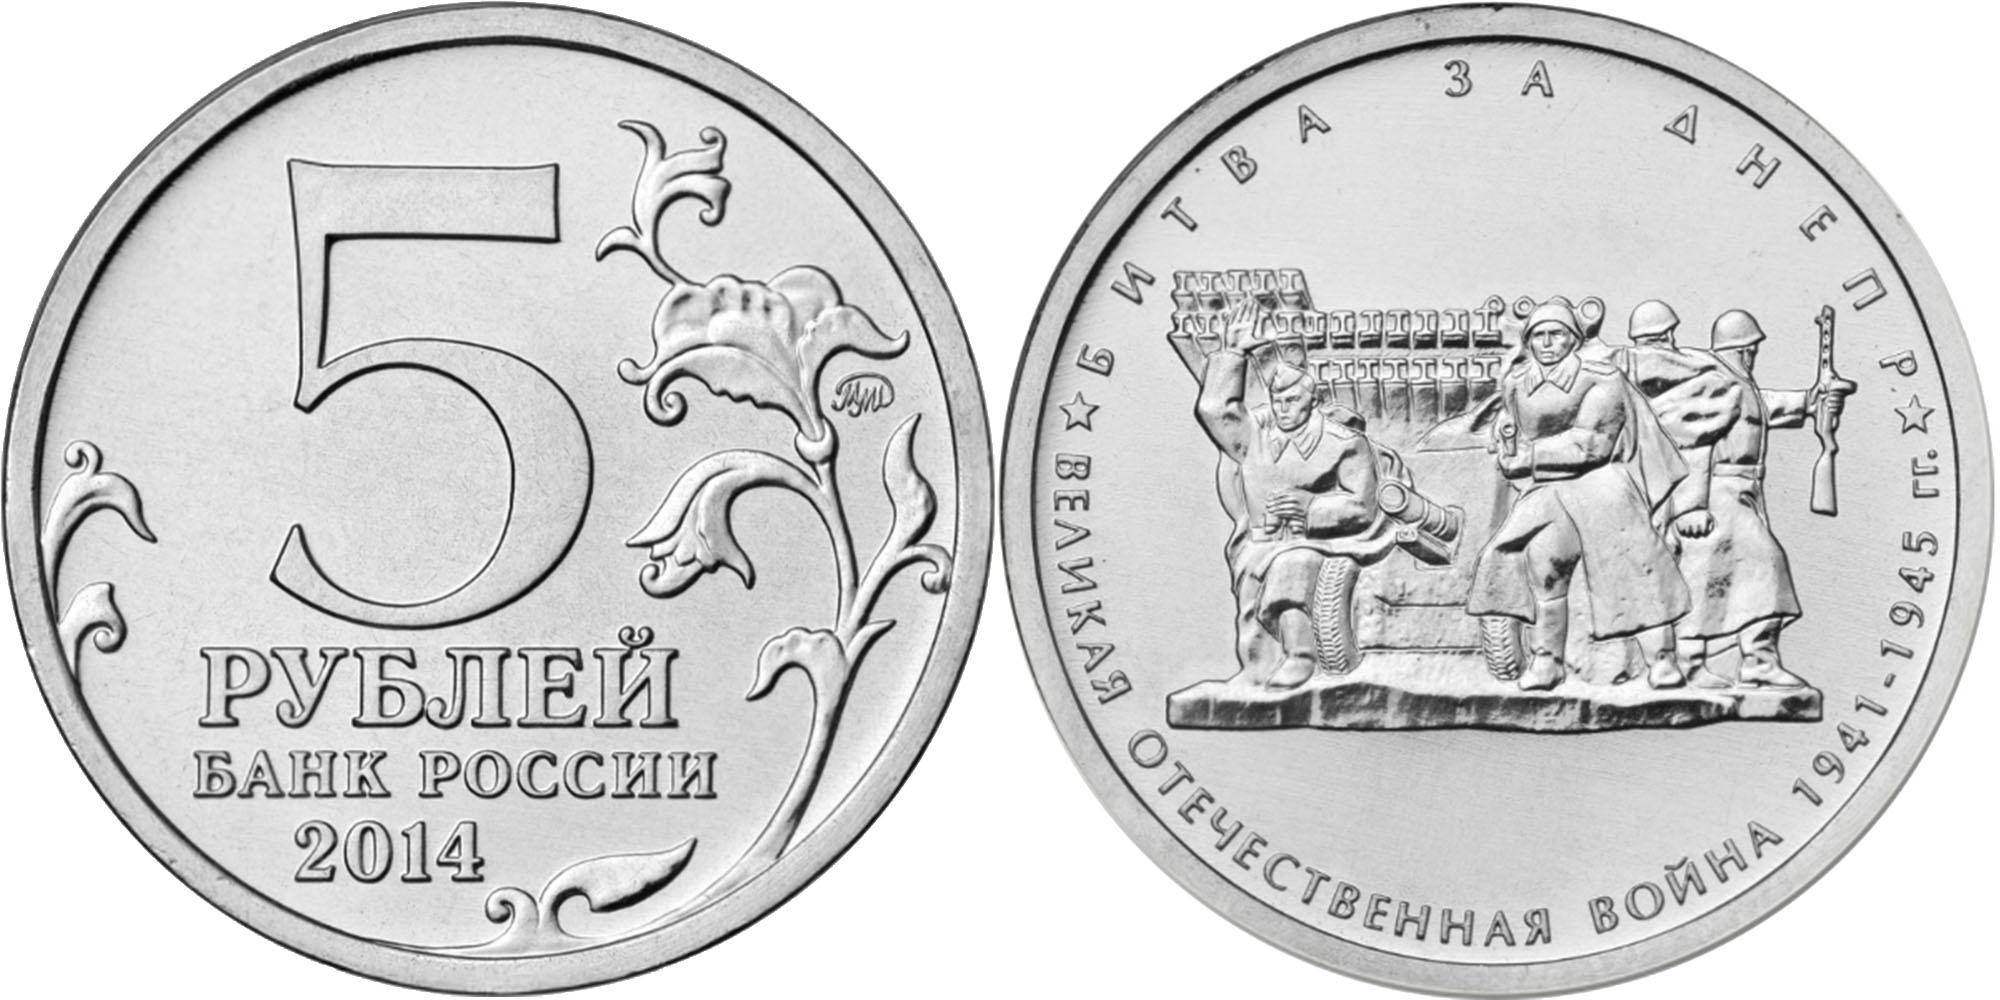 Монеты посвященные 70-летию Победы в Великой Отечественной войне 1941-1945 годов.